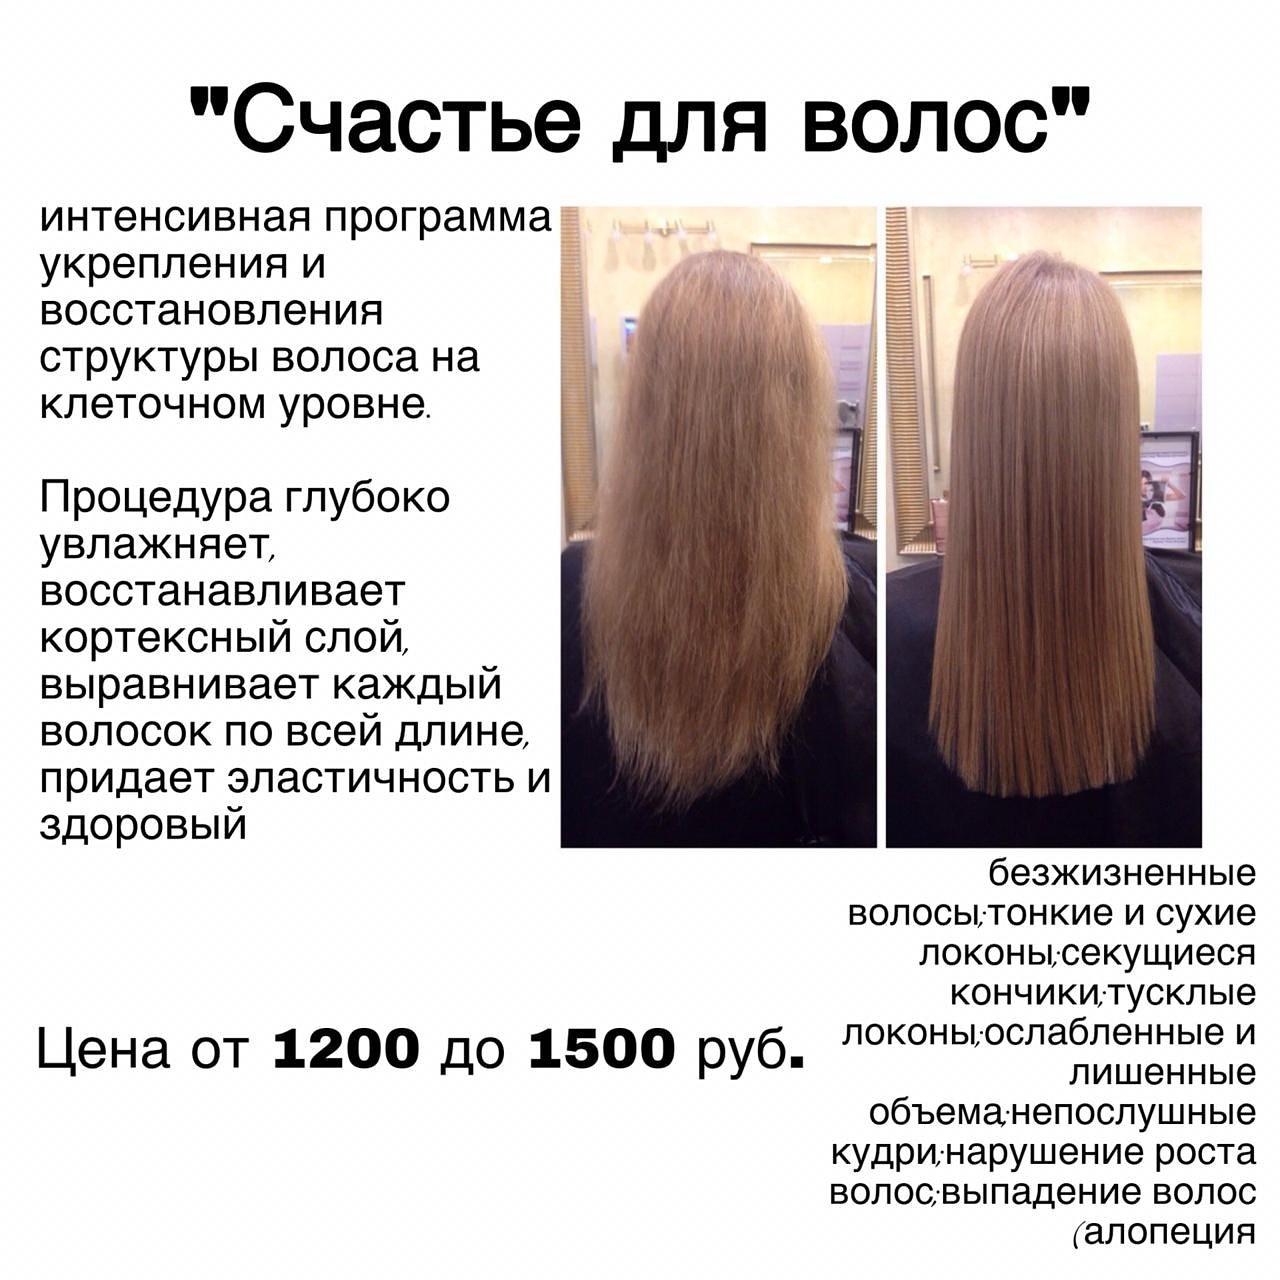 Счастье для волос lebel инструкция по применению пошагово с фото